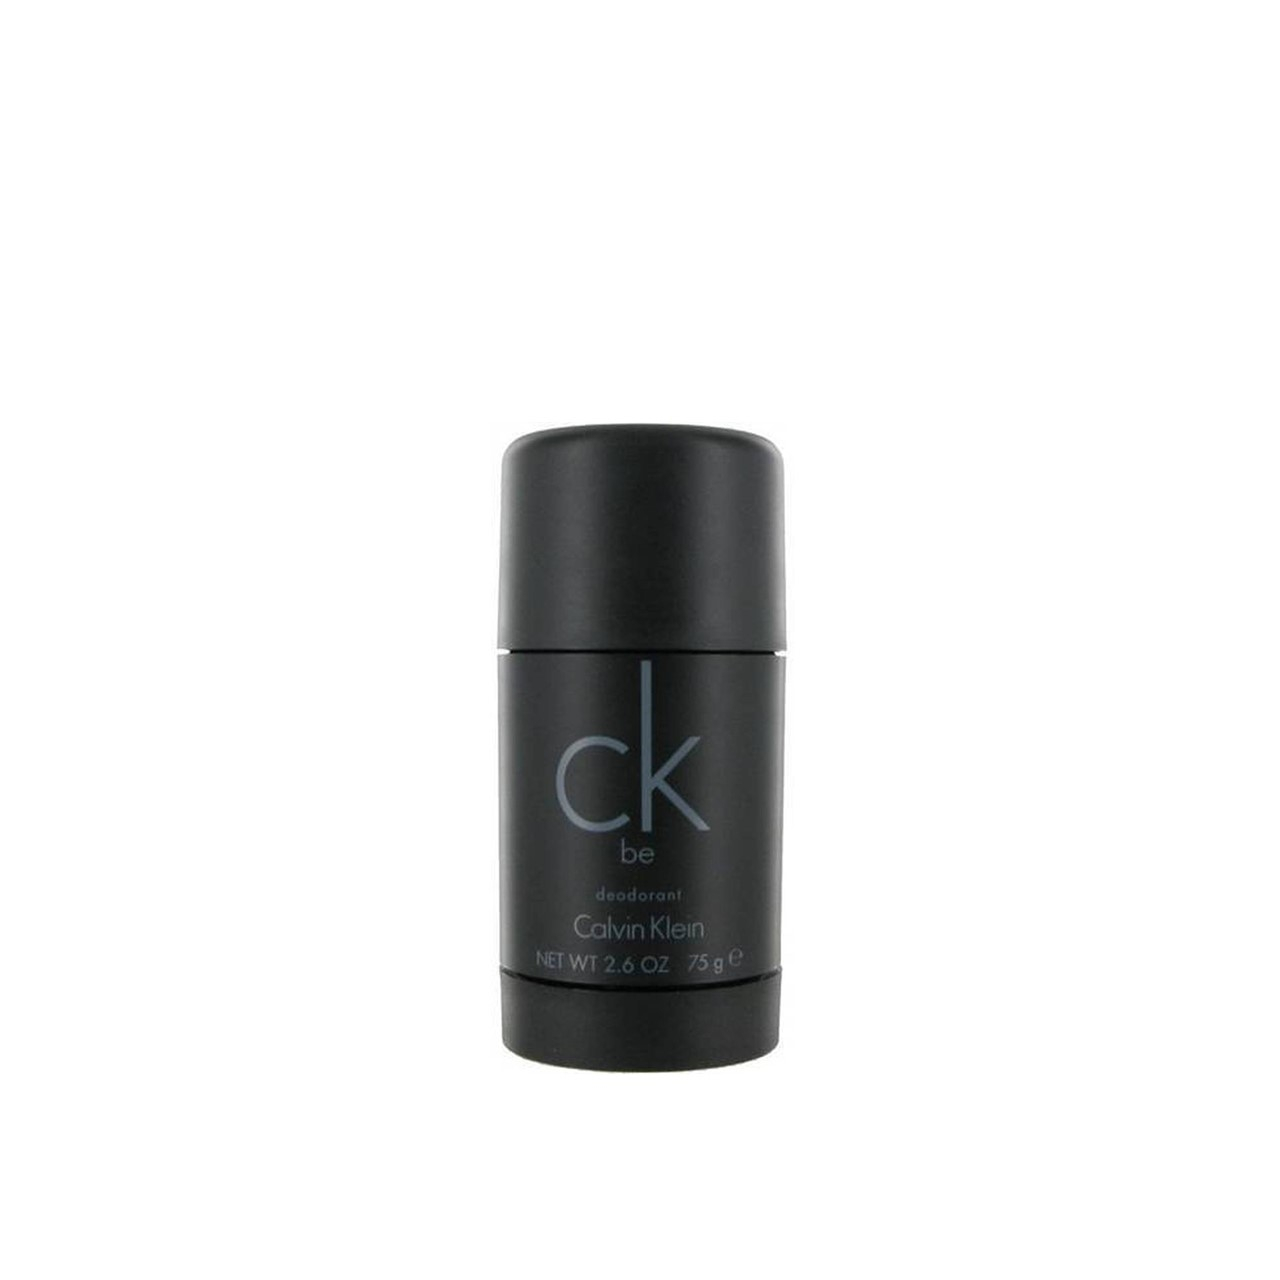 CK One by Calvin Klein 2.6 oz Deodorant Stick